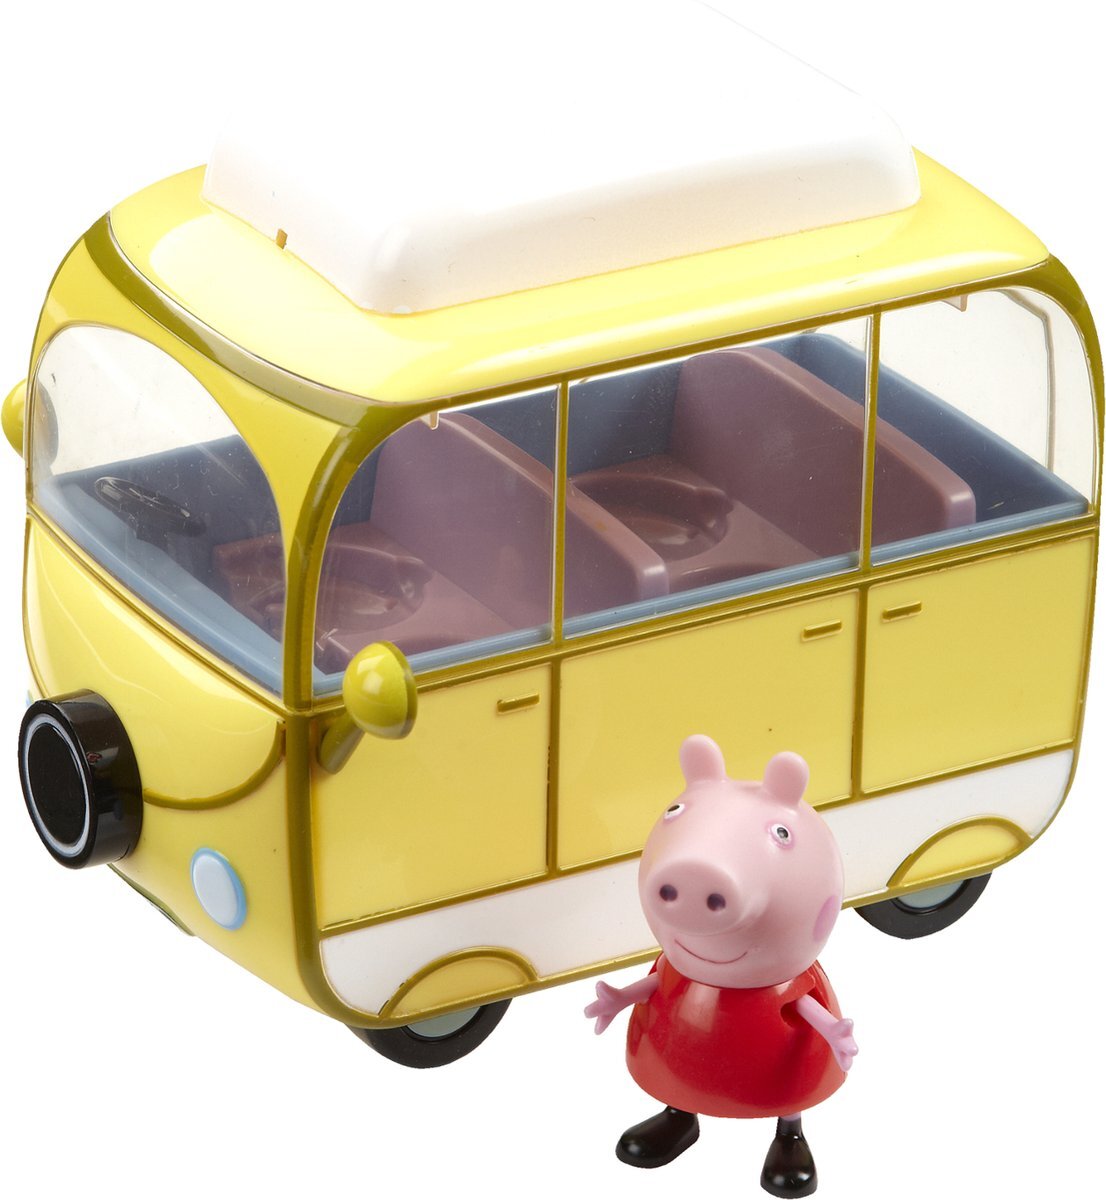 TM toys Peppa Pig - een Peppy-camper met een figuur aanbeden door alle kinderen